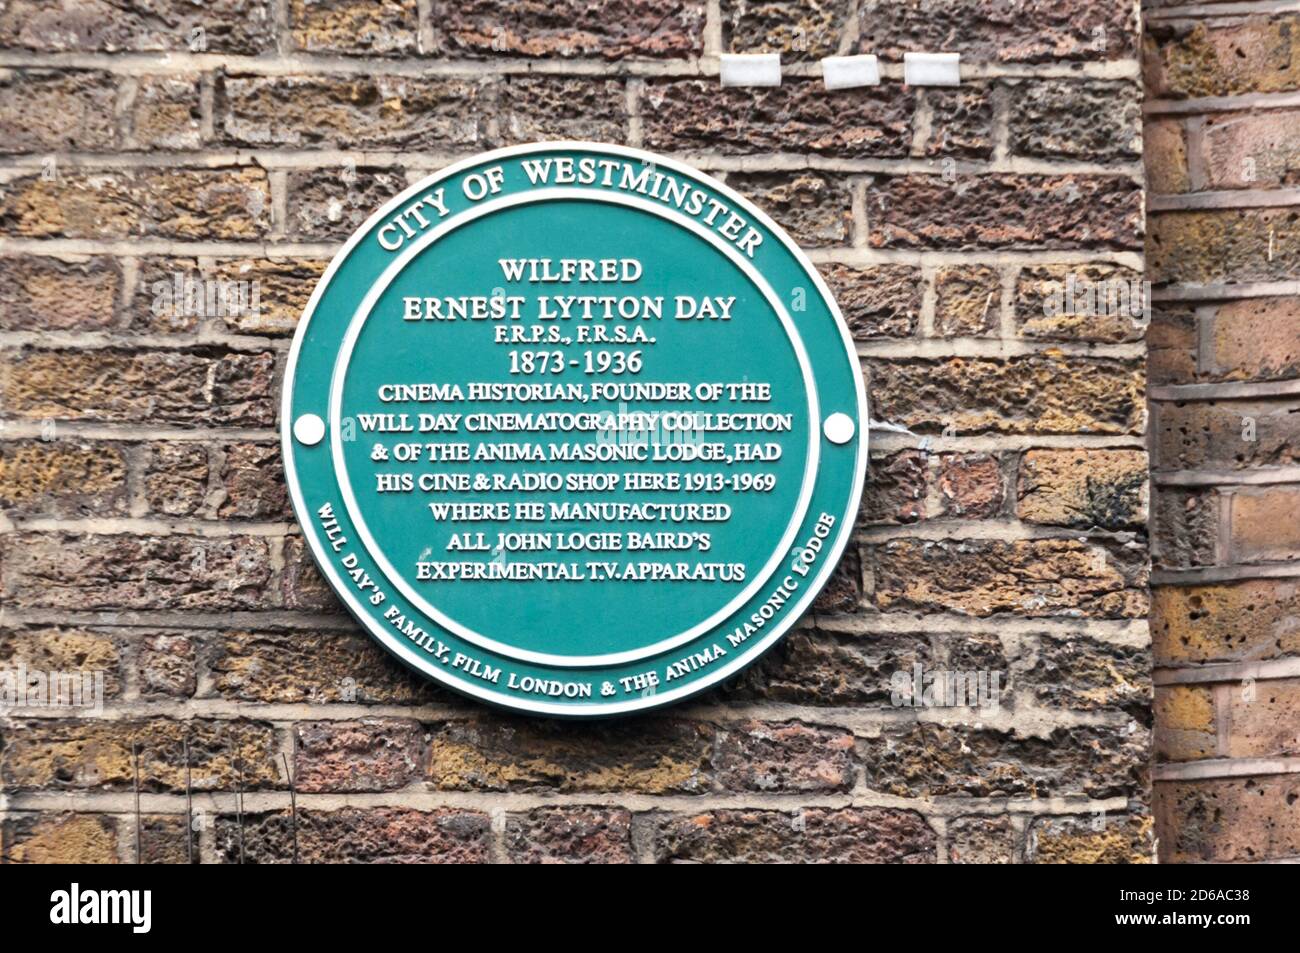 Plaque verte de la ville de Westminster commémorant le jour de Wilfred Ernest Lytton, dans la rue Lisle, Soho. Banque D'Images